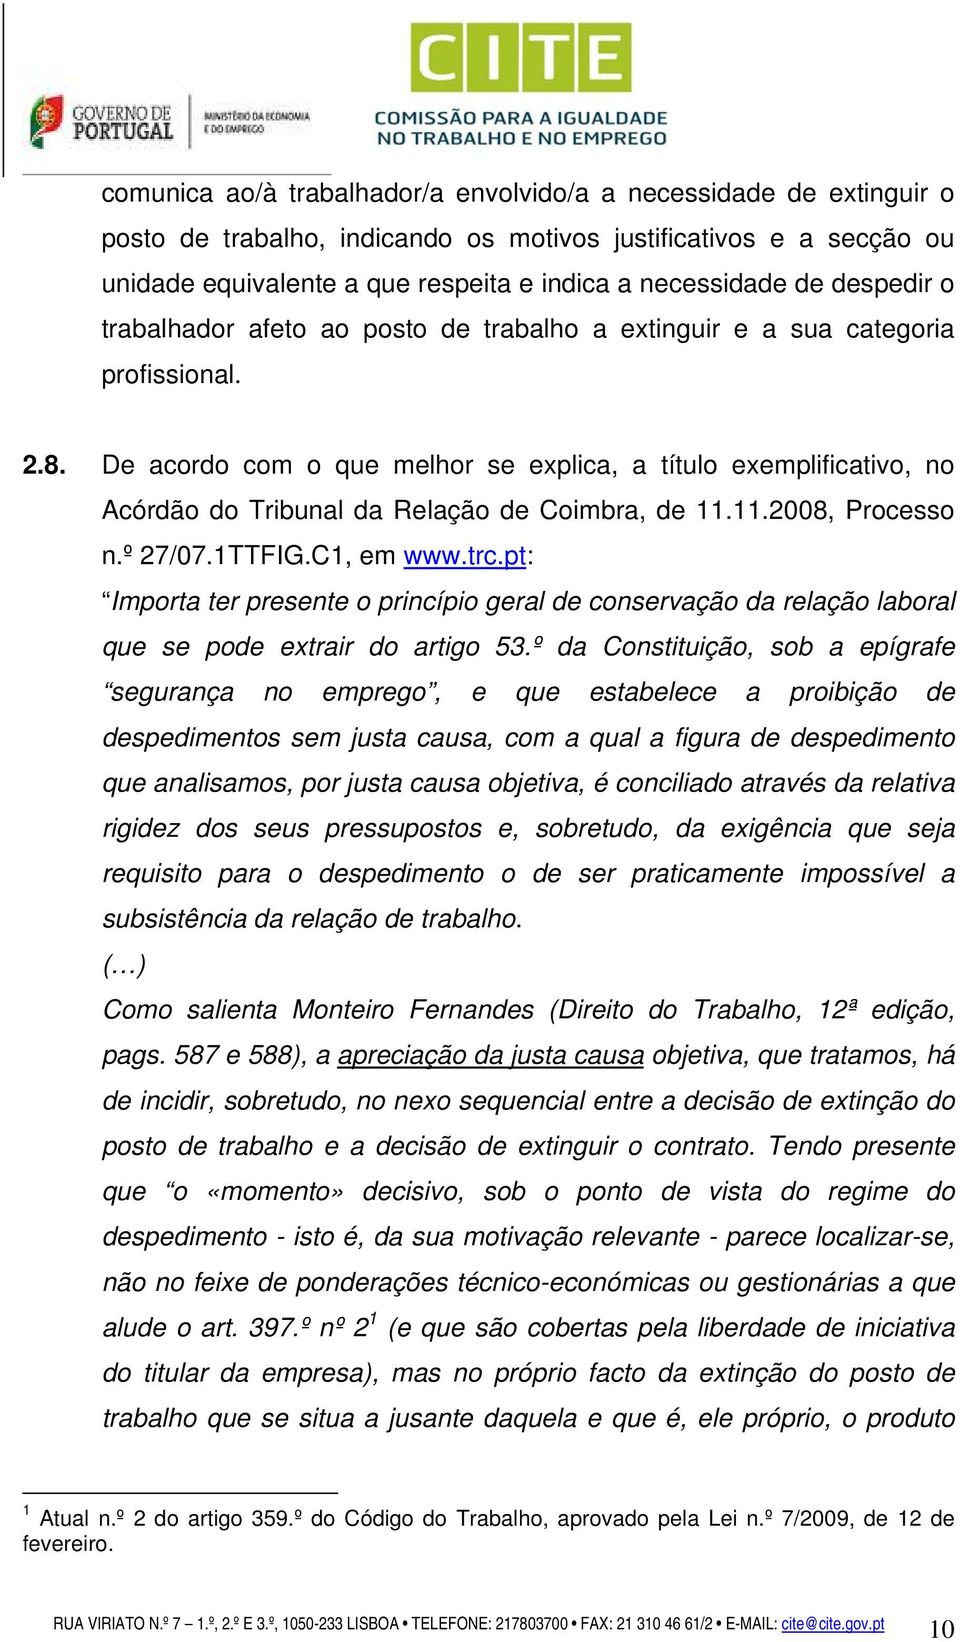 De acordo com o que melhor se explica, a título exemplificativo, no Acórdão do Tribunal da Relação de Coimbra, de 11.11.2008, Processo n.º 27/07.1TTFIG.C1, em www.trc.